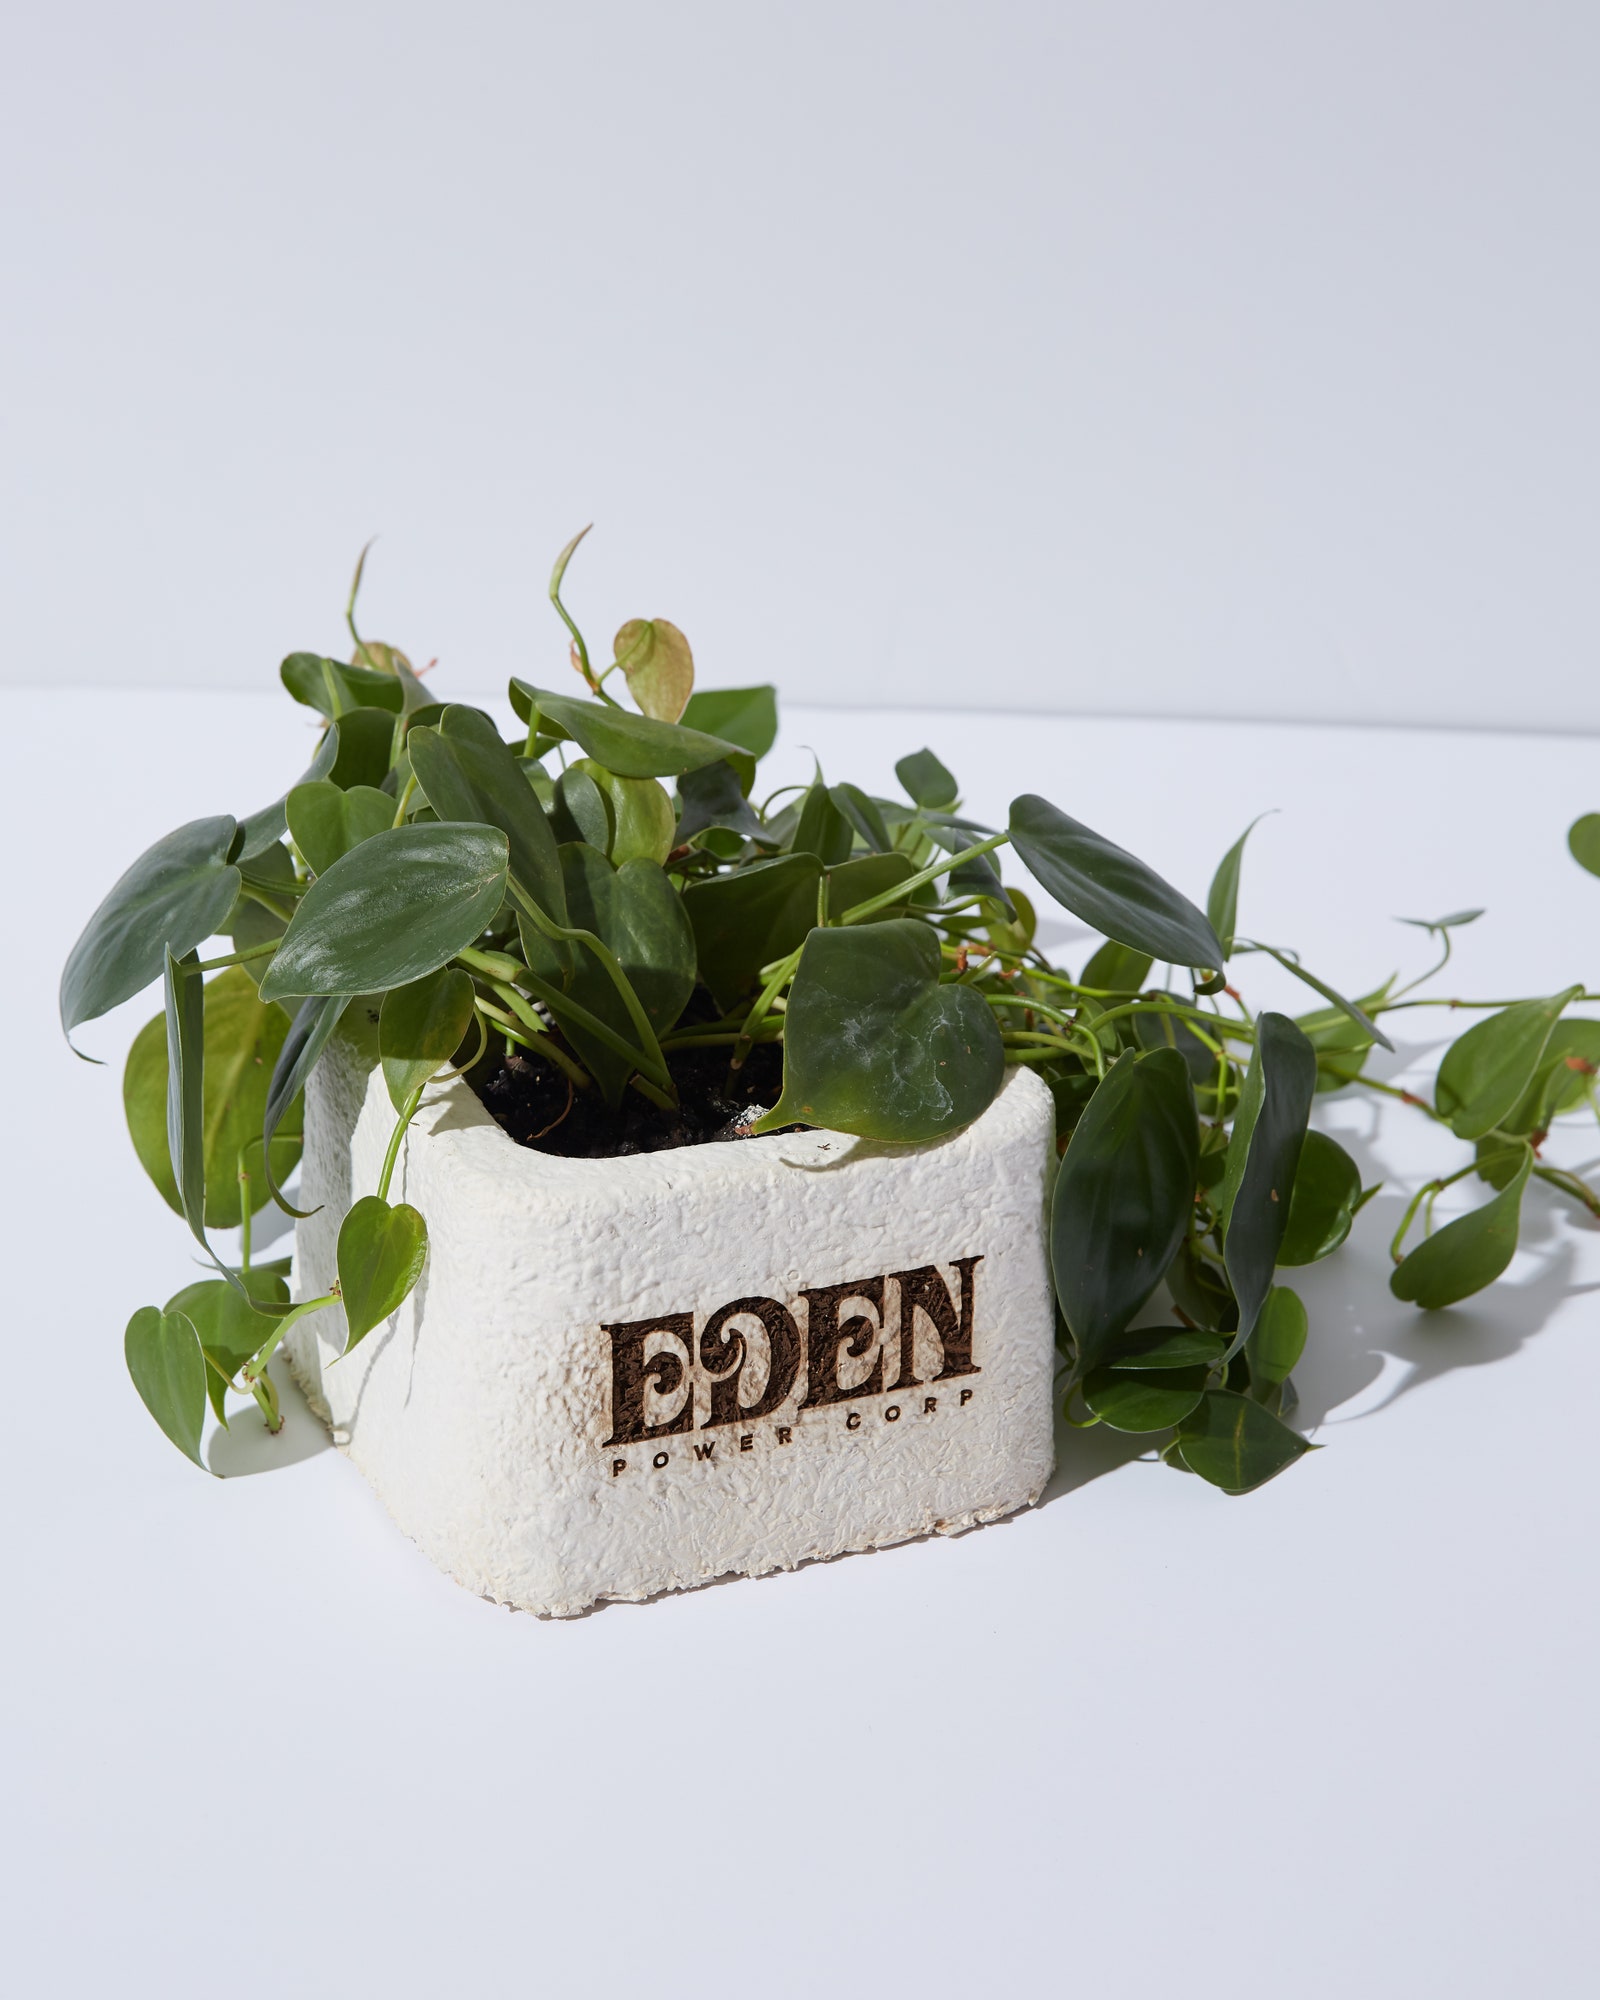 Mycelium Planter d'EDEN Power Corp fabriqué à partir de 100 mycélium sur des déchets de chanvre en partenariat avec Eden Reforestation. . .